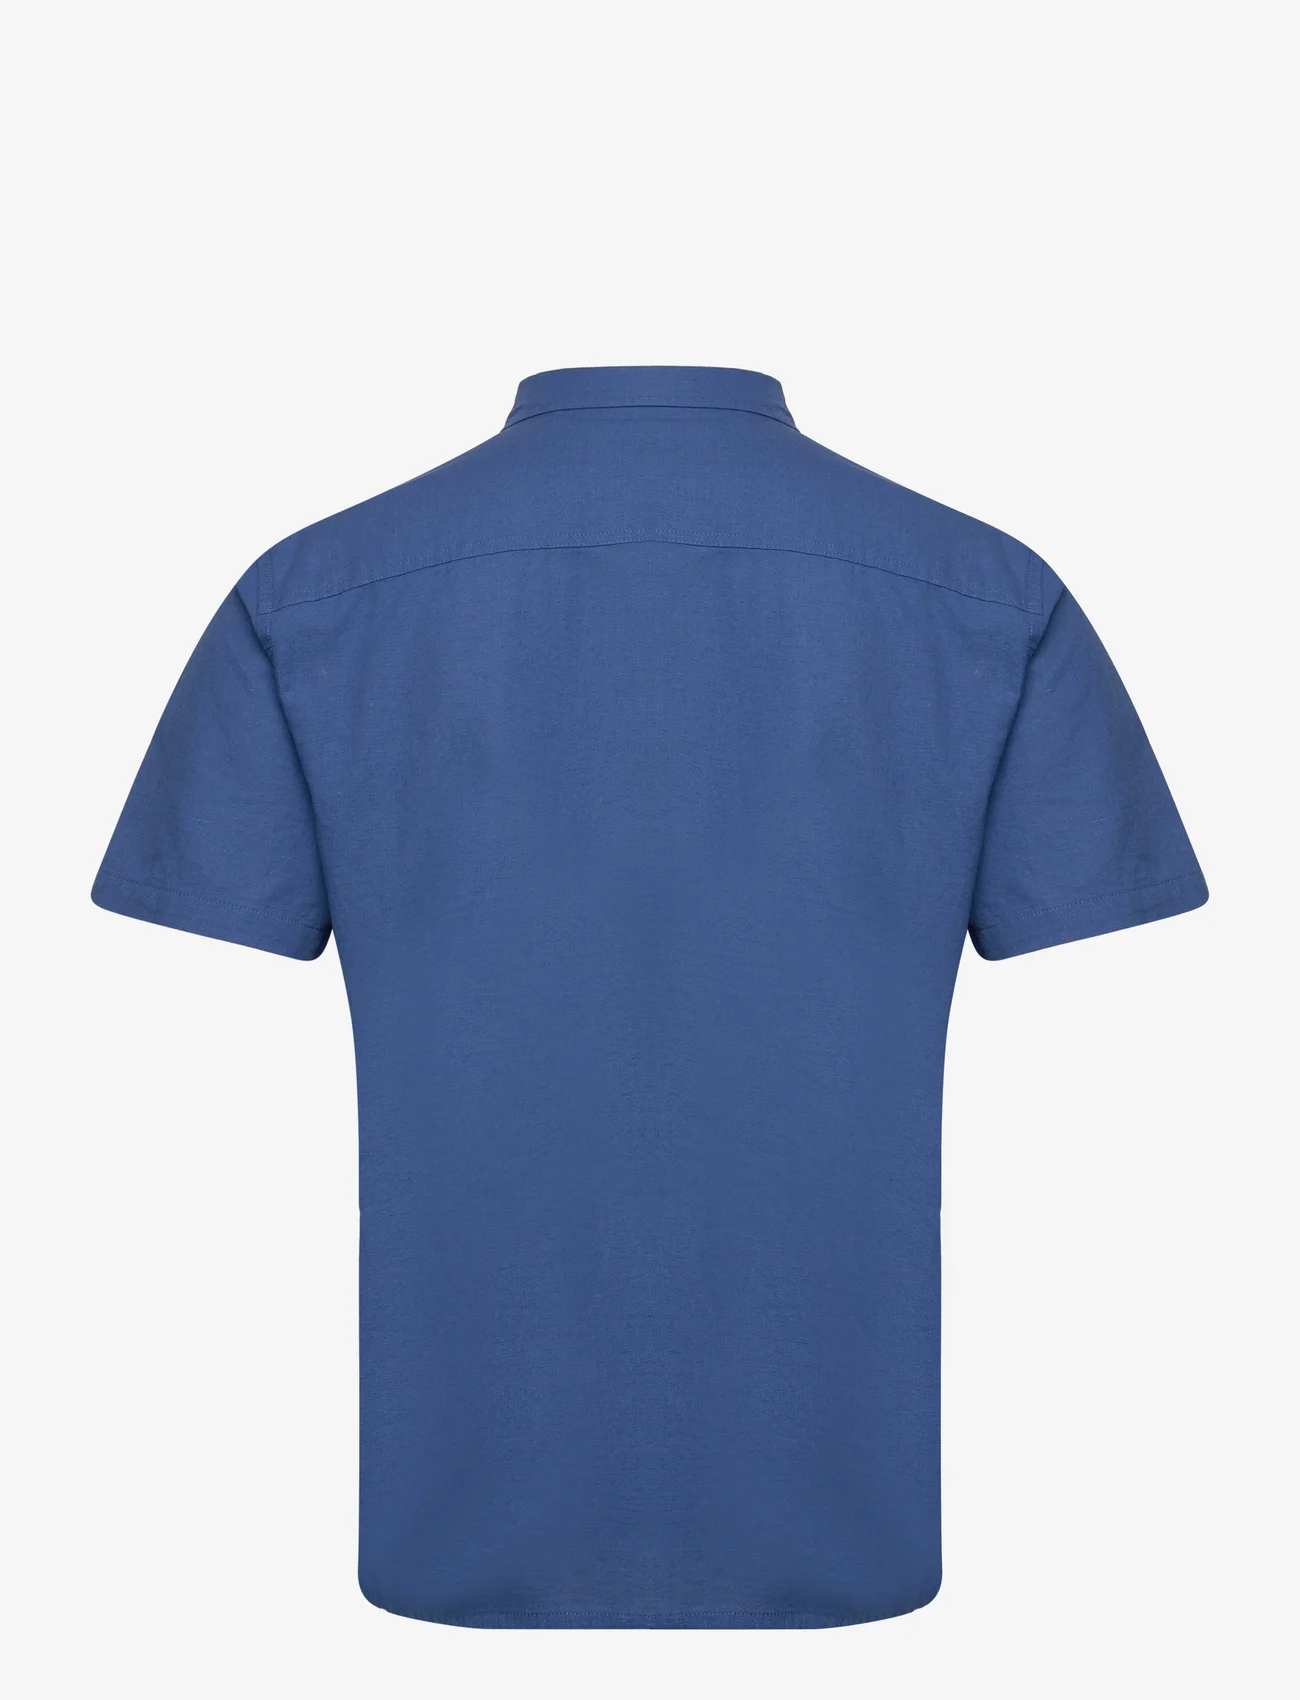 Blend - Shirt - basic shirts - delft - 1